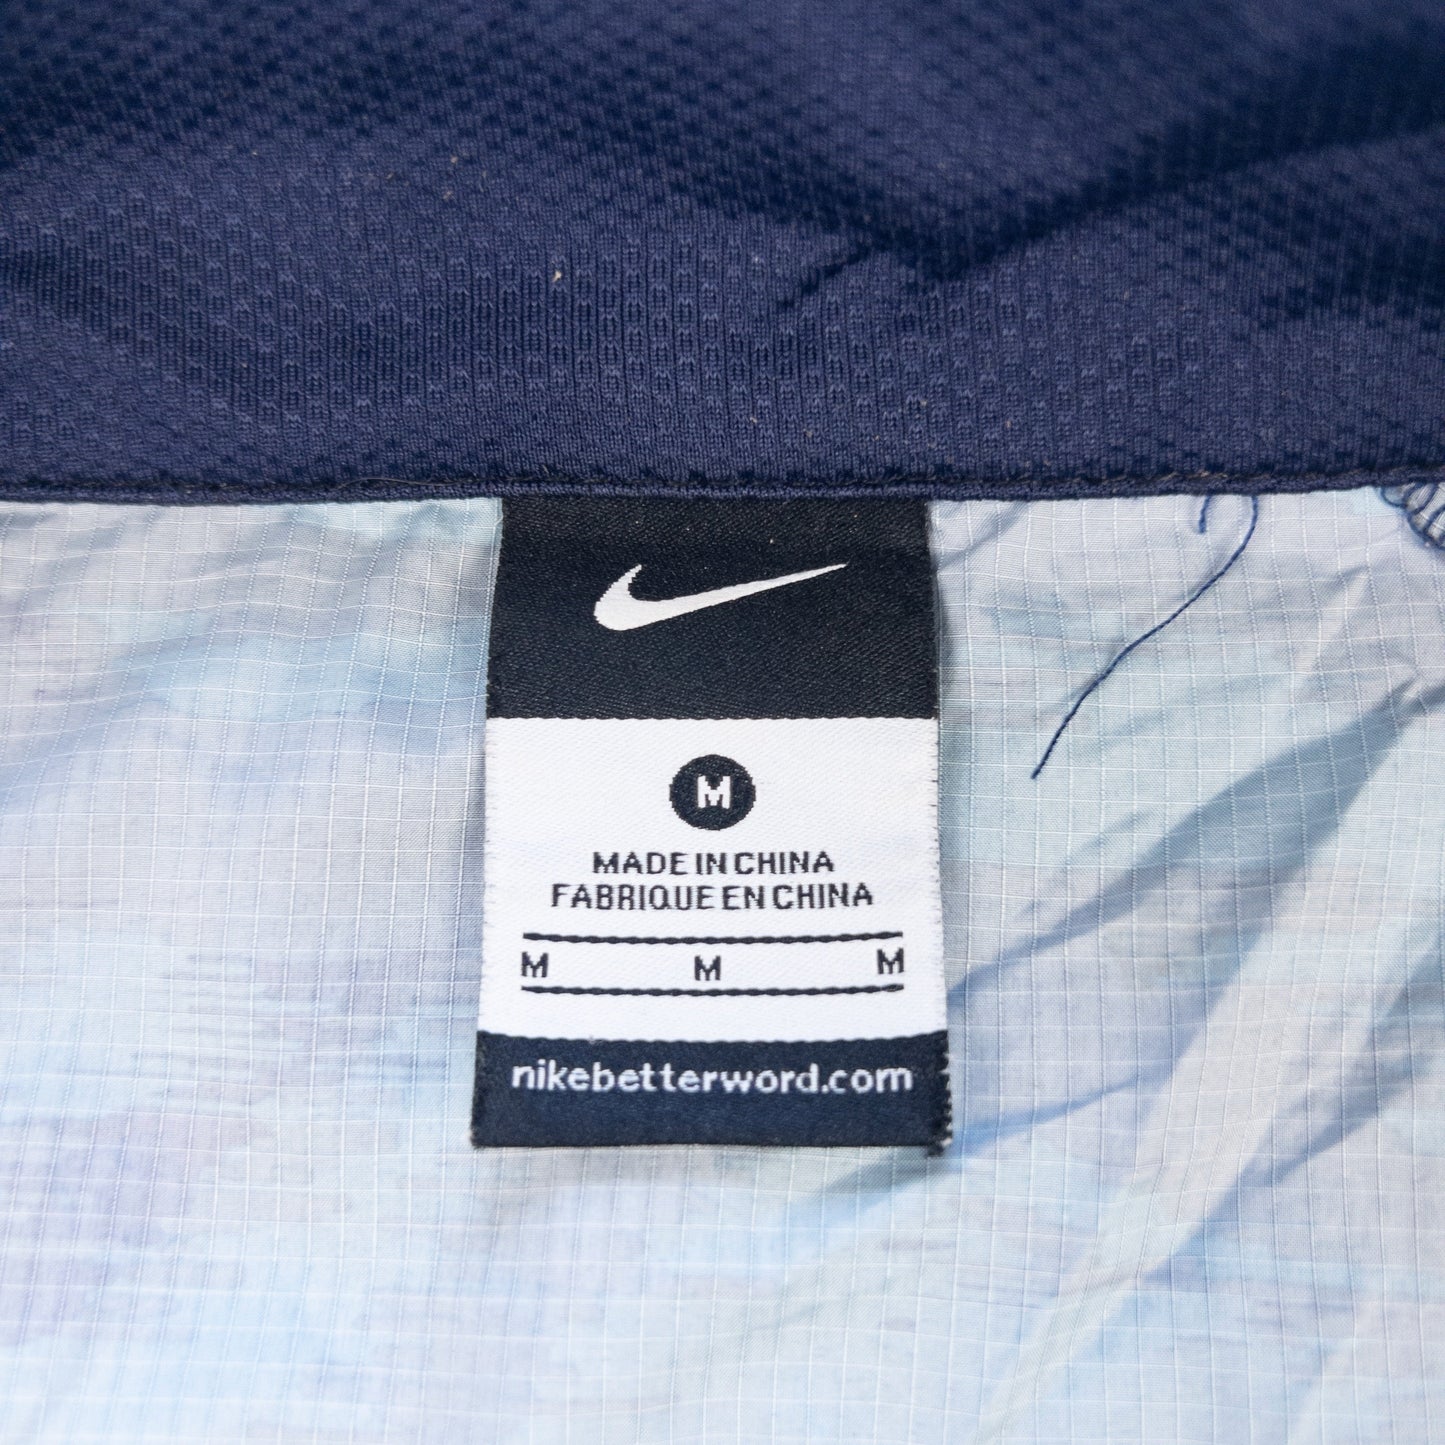 Vintage Nike Gyakusou Undercover Jacket Size S